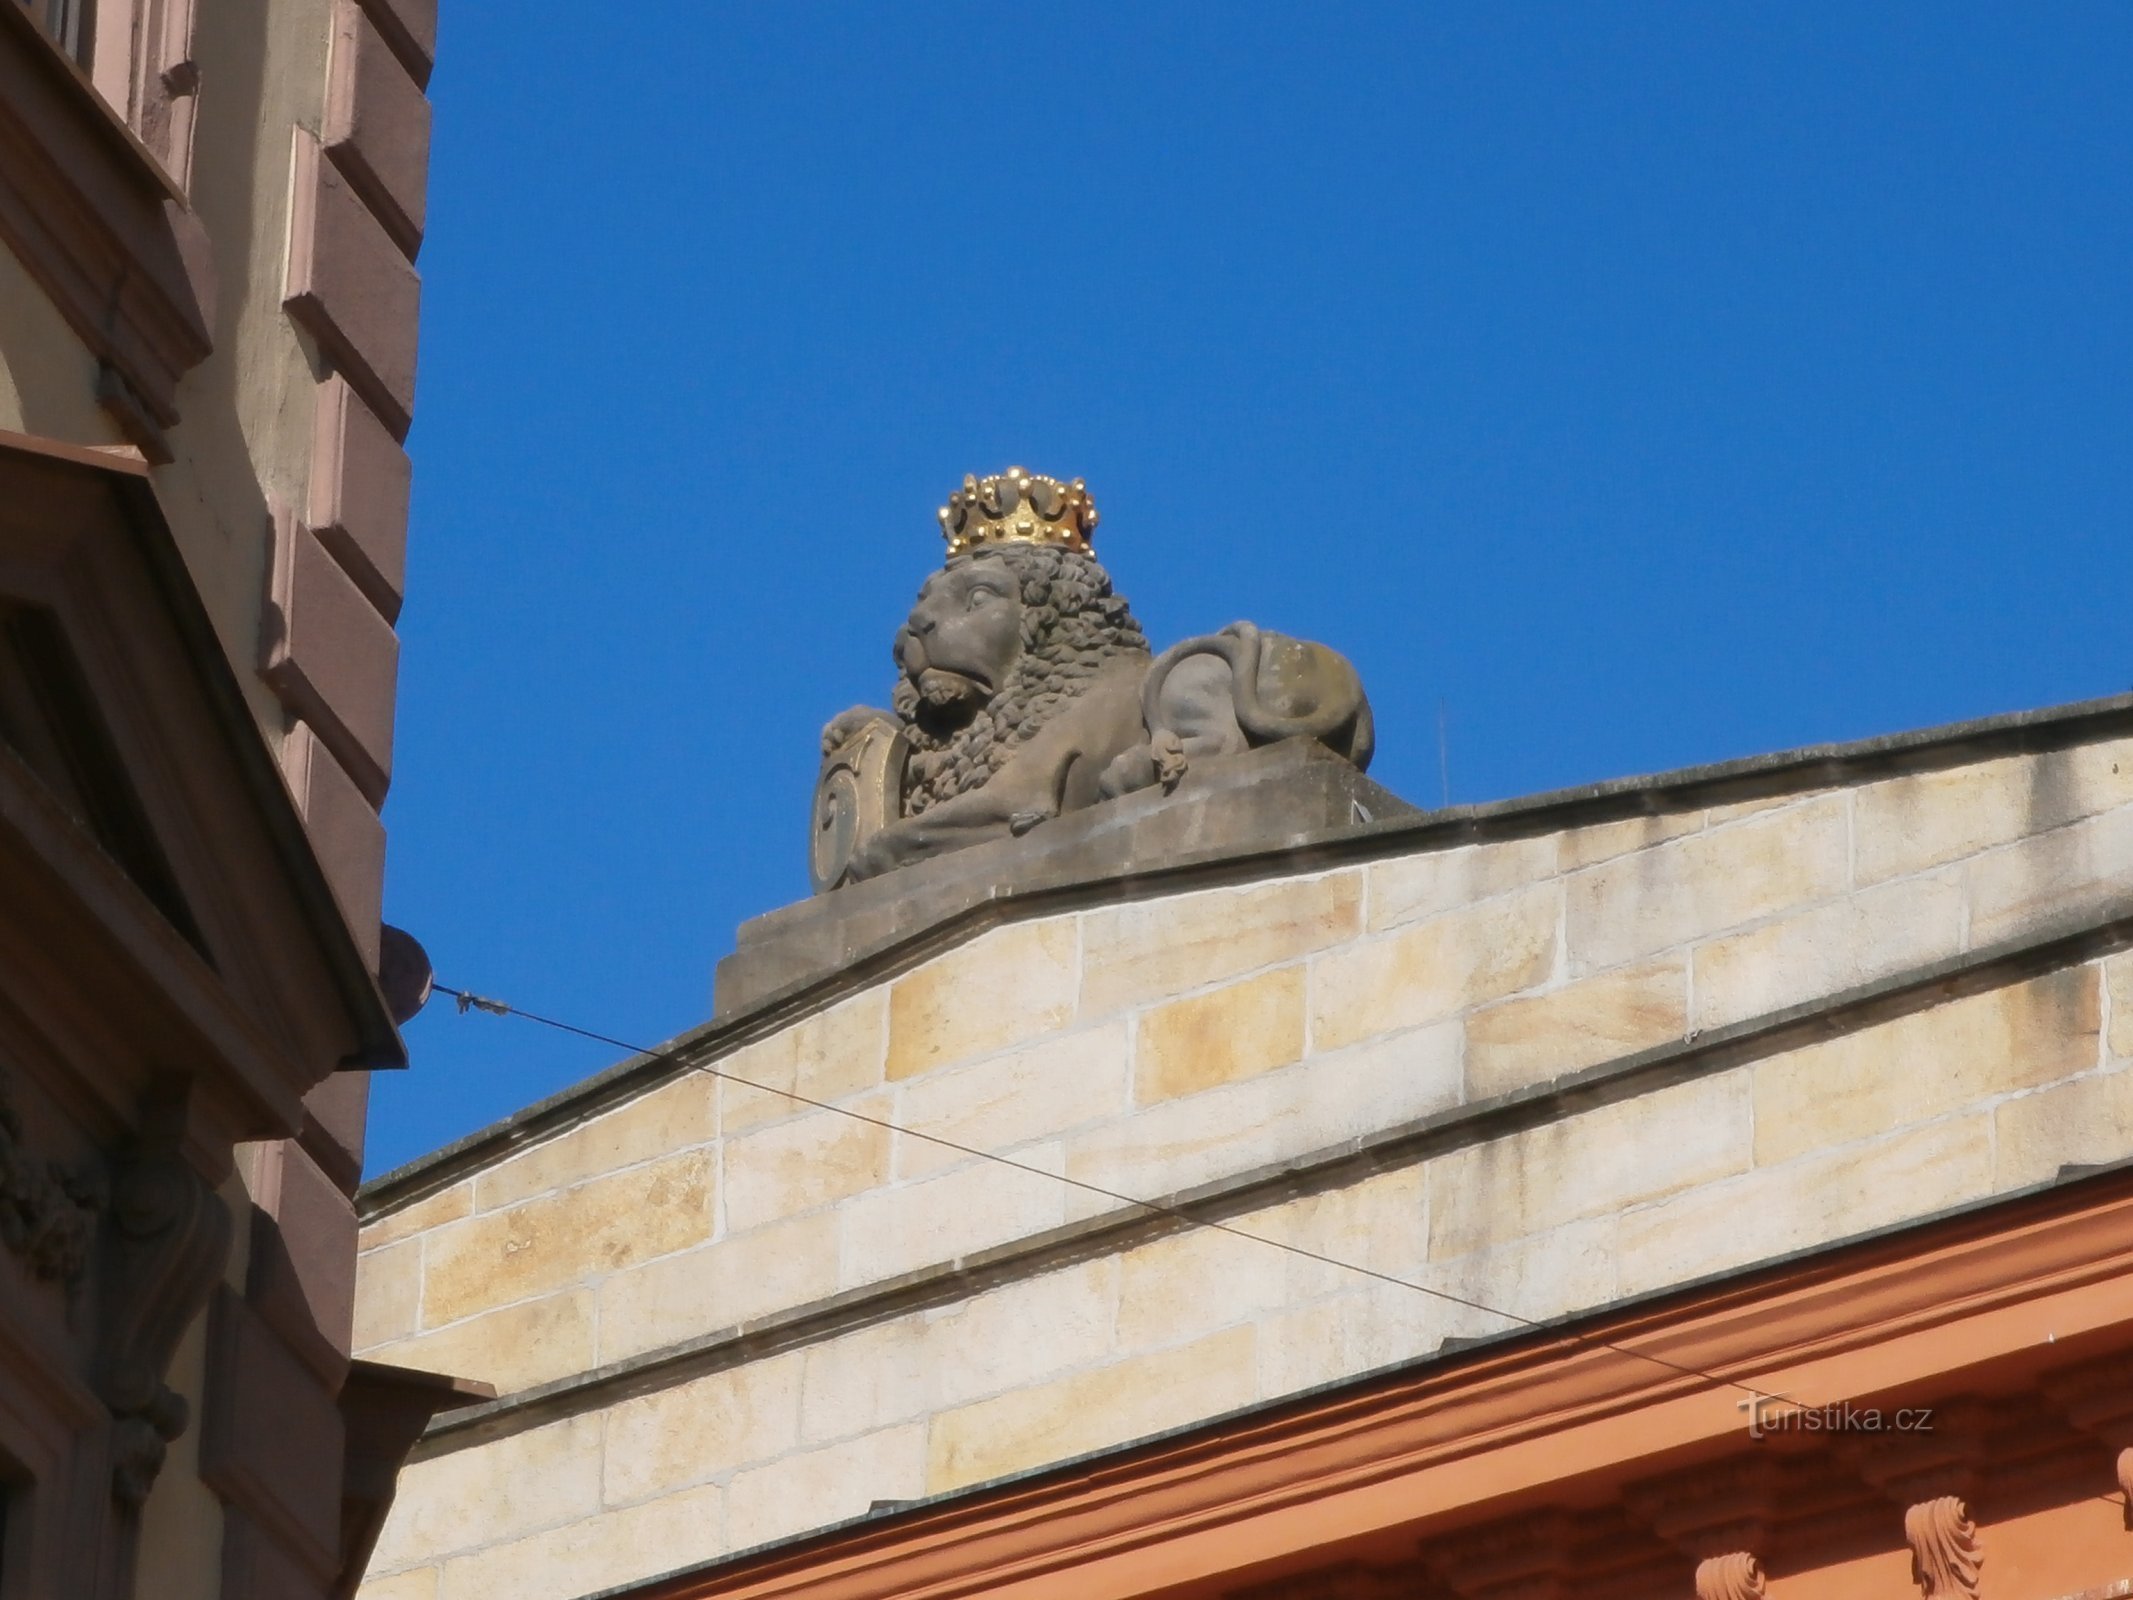 Statua del leone al n. 230 (Hradec Králové, 18.6.2016/XNUMX/XNUMX)